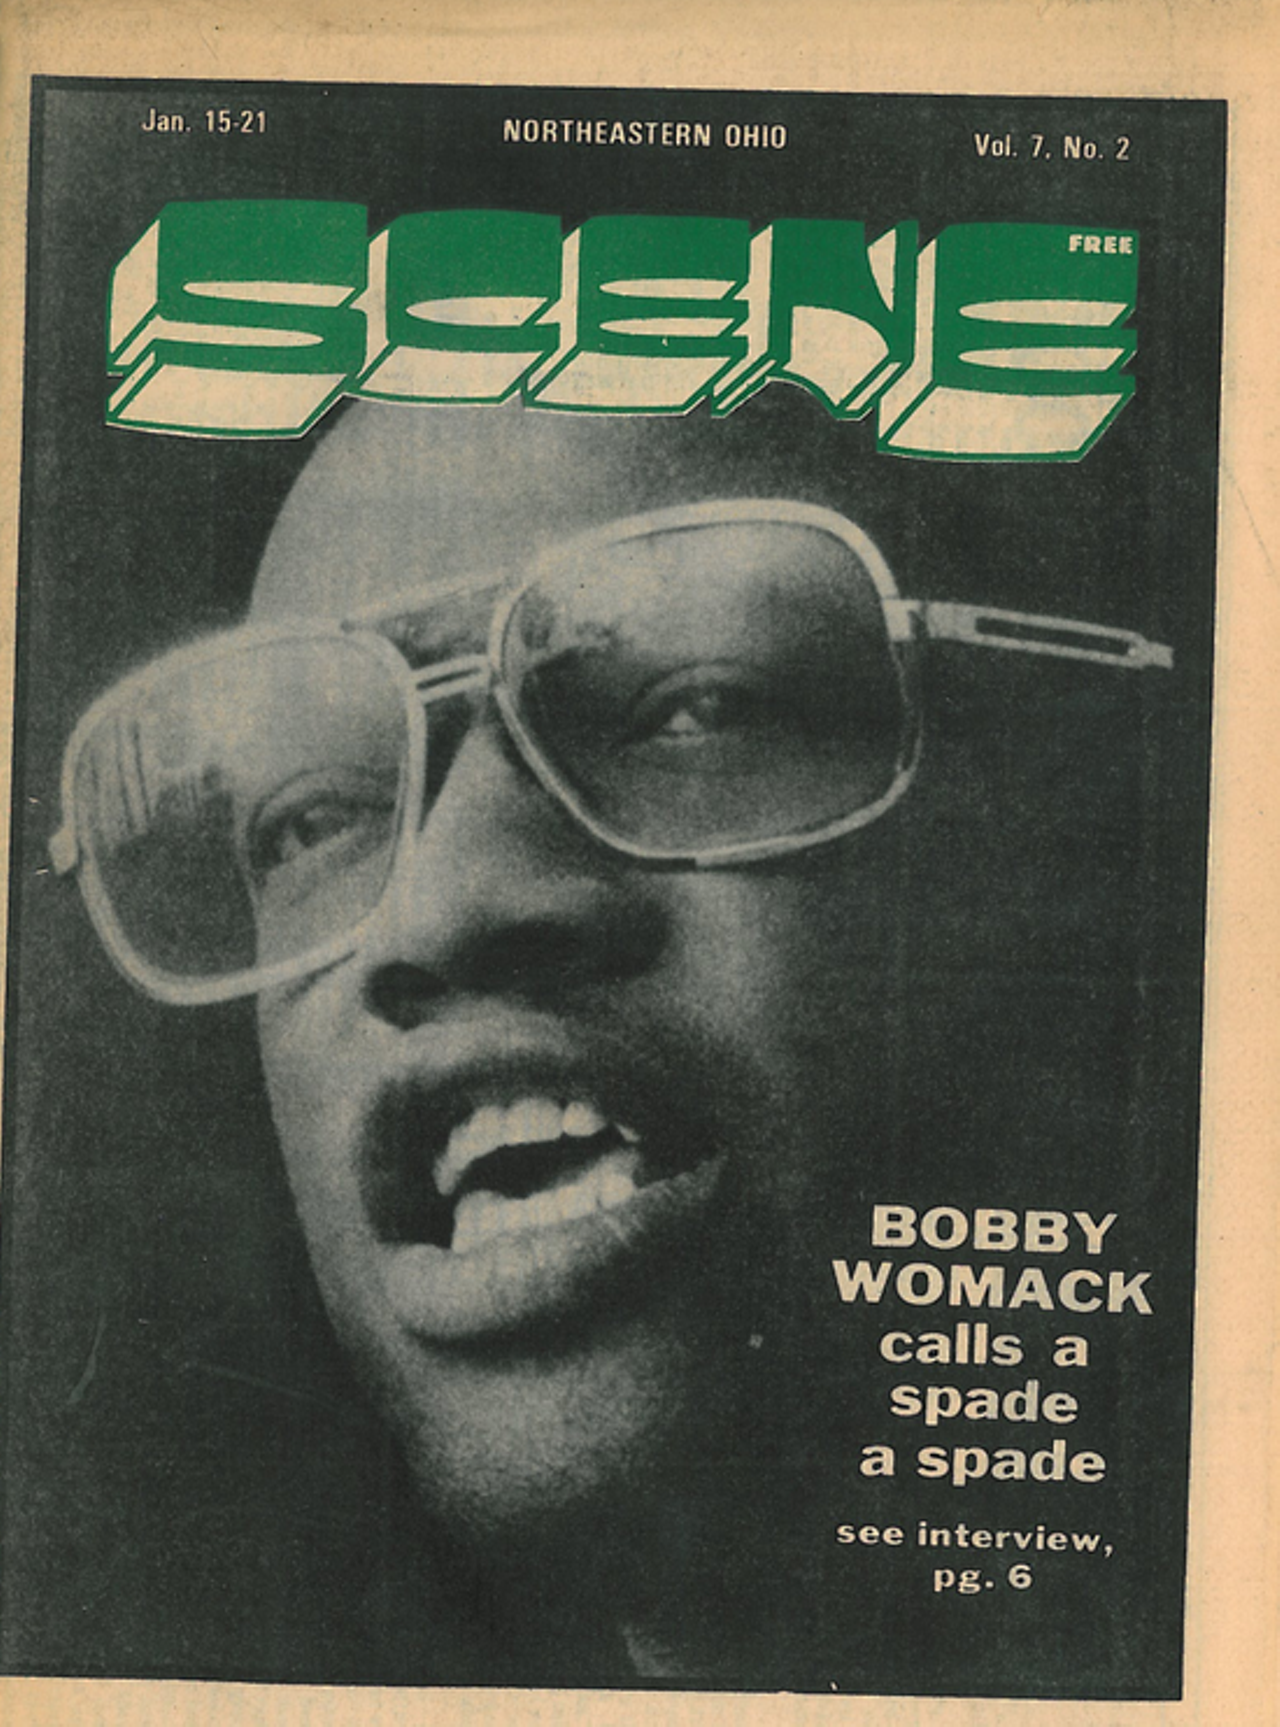 "Bobby Womack calls a spade a spade," 1975.